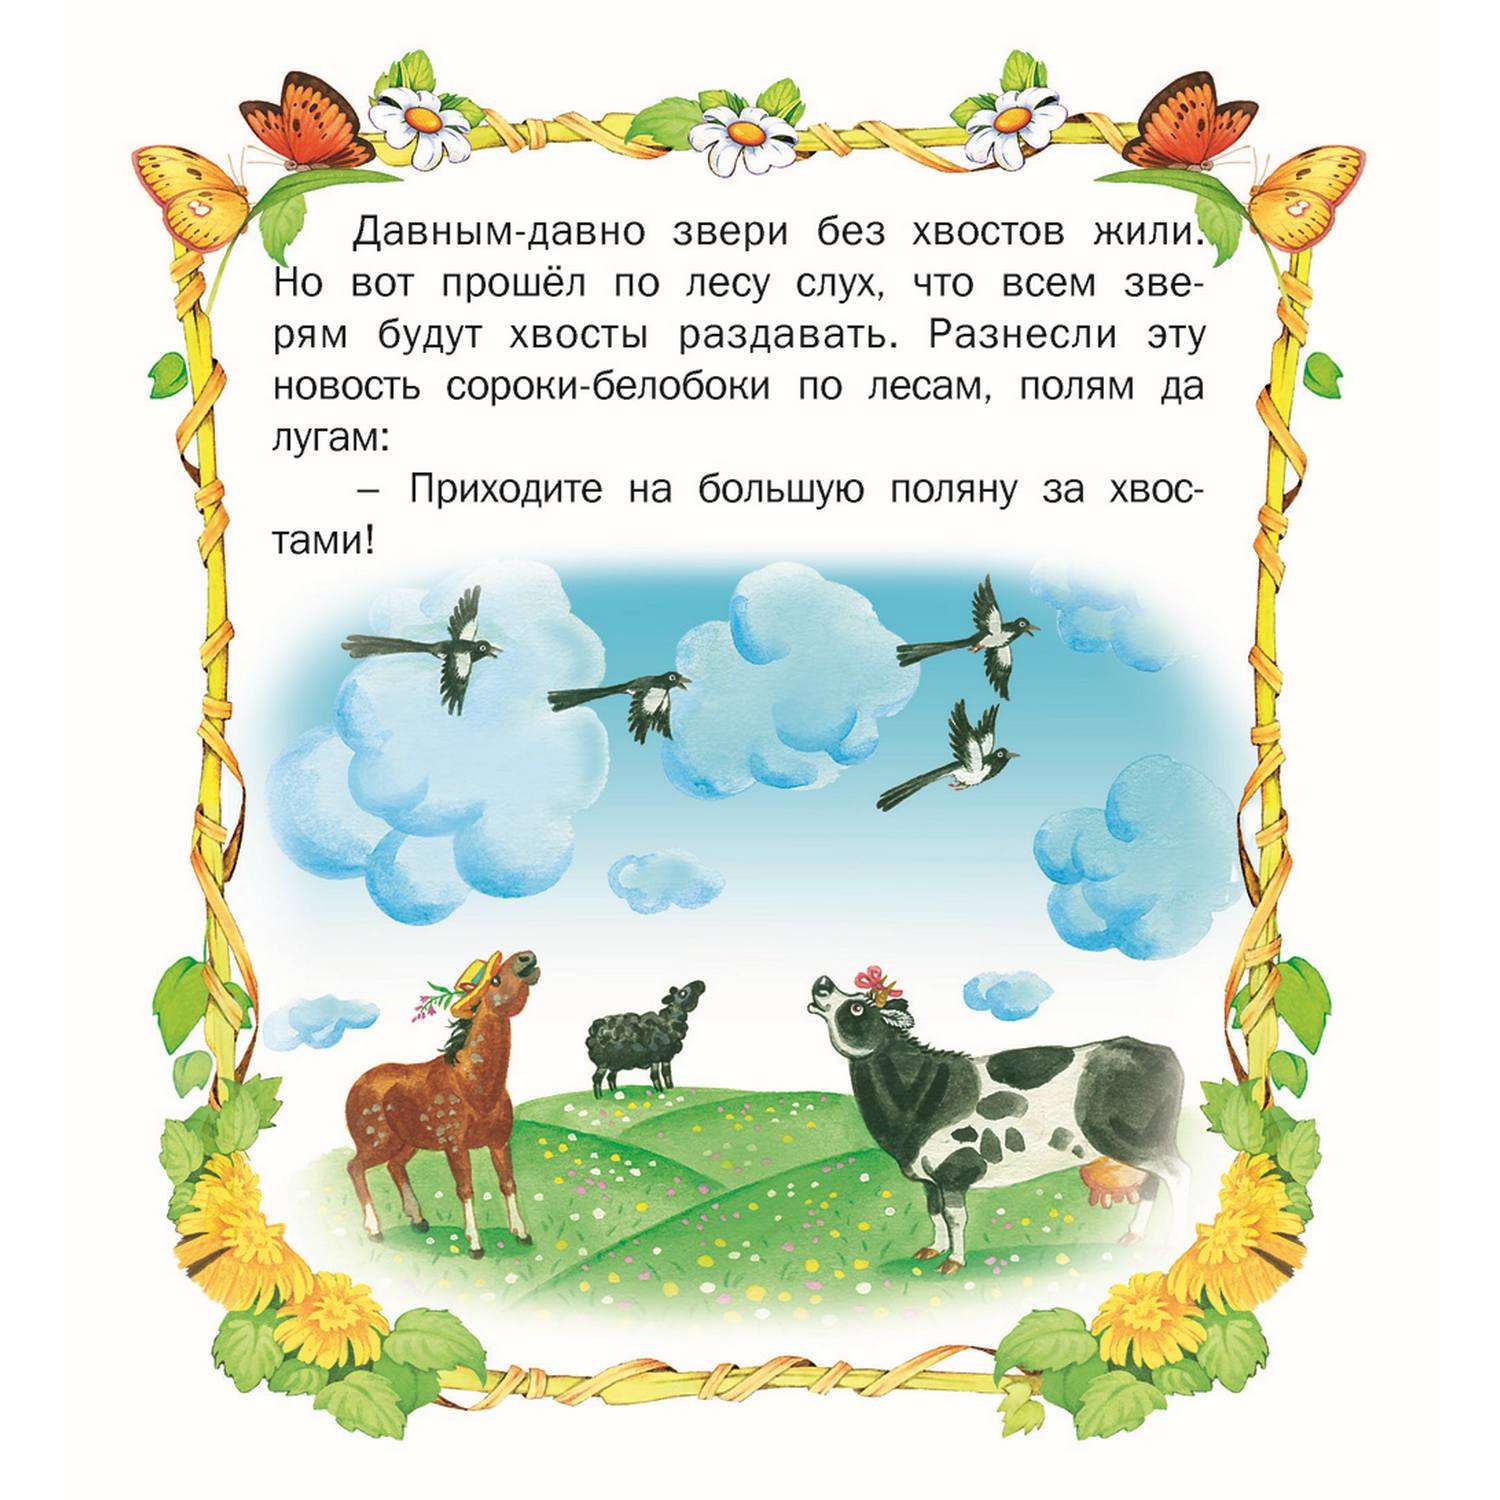 Книга Русич стихи и сказки для детей комплект 5 шт - фото 11